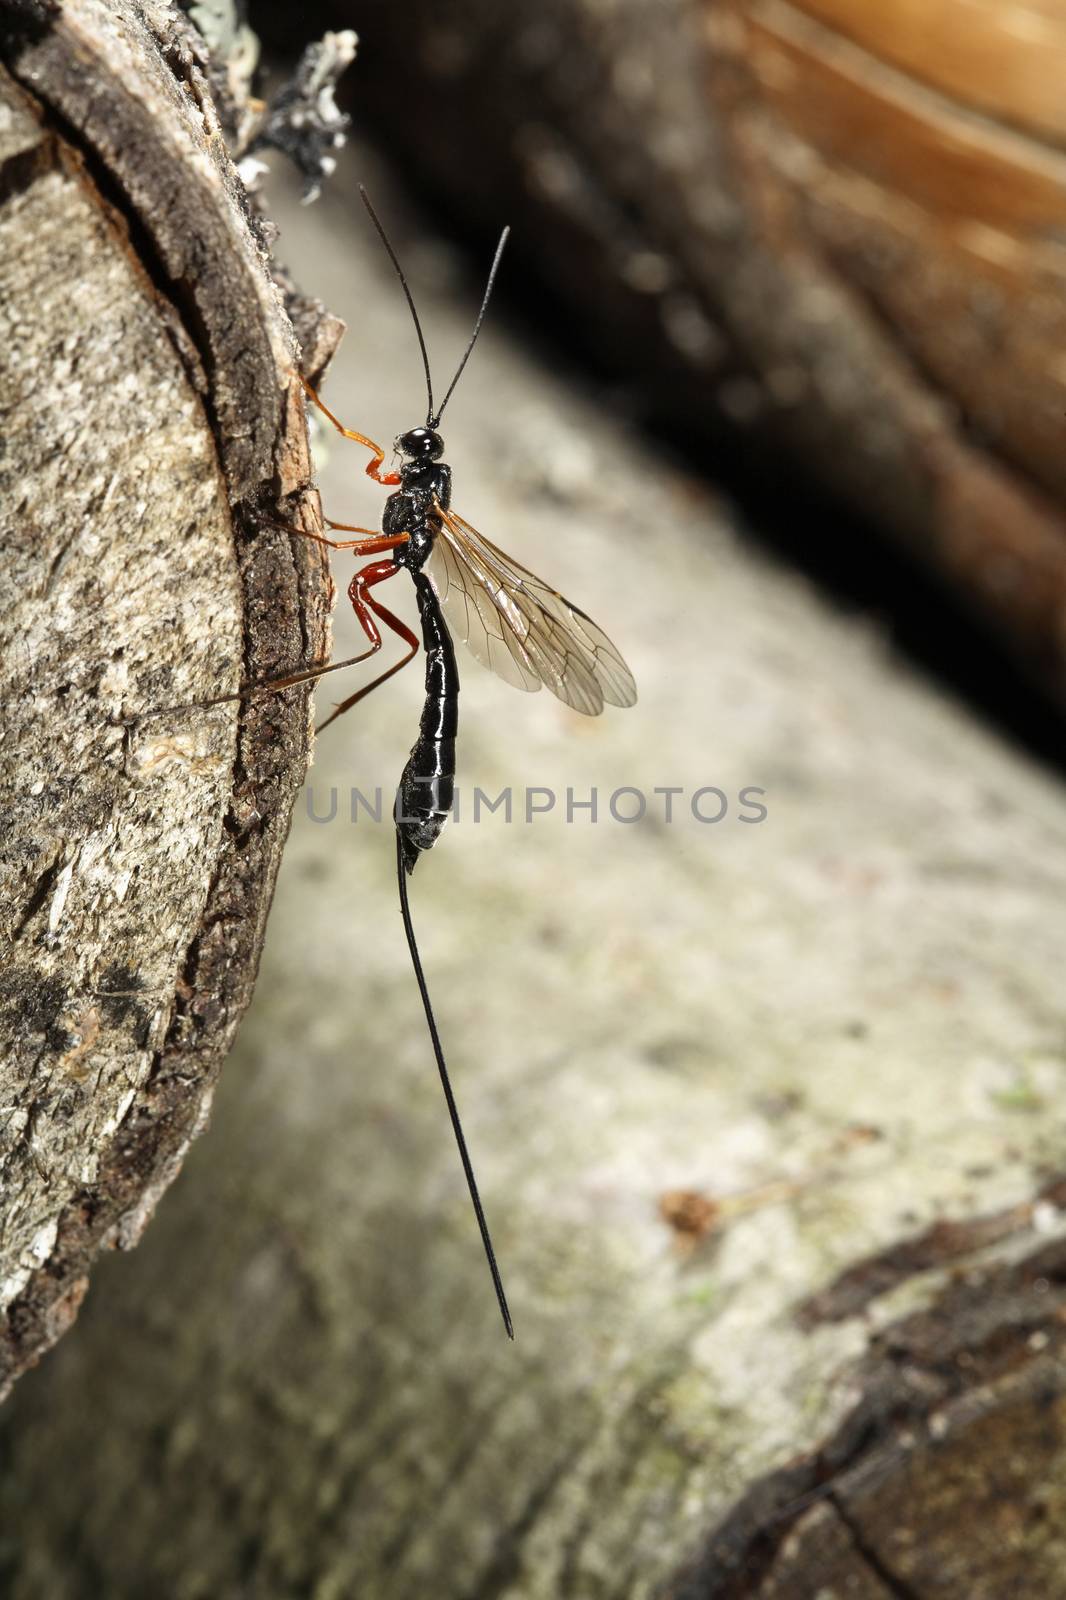 Megarhyssa Wasp (Ichneumonidae) insect species.